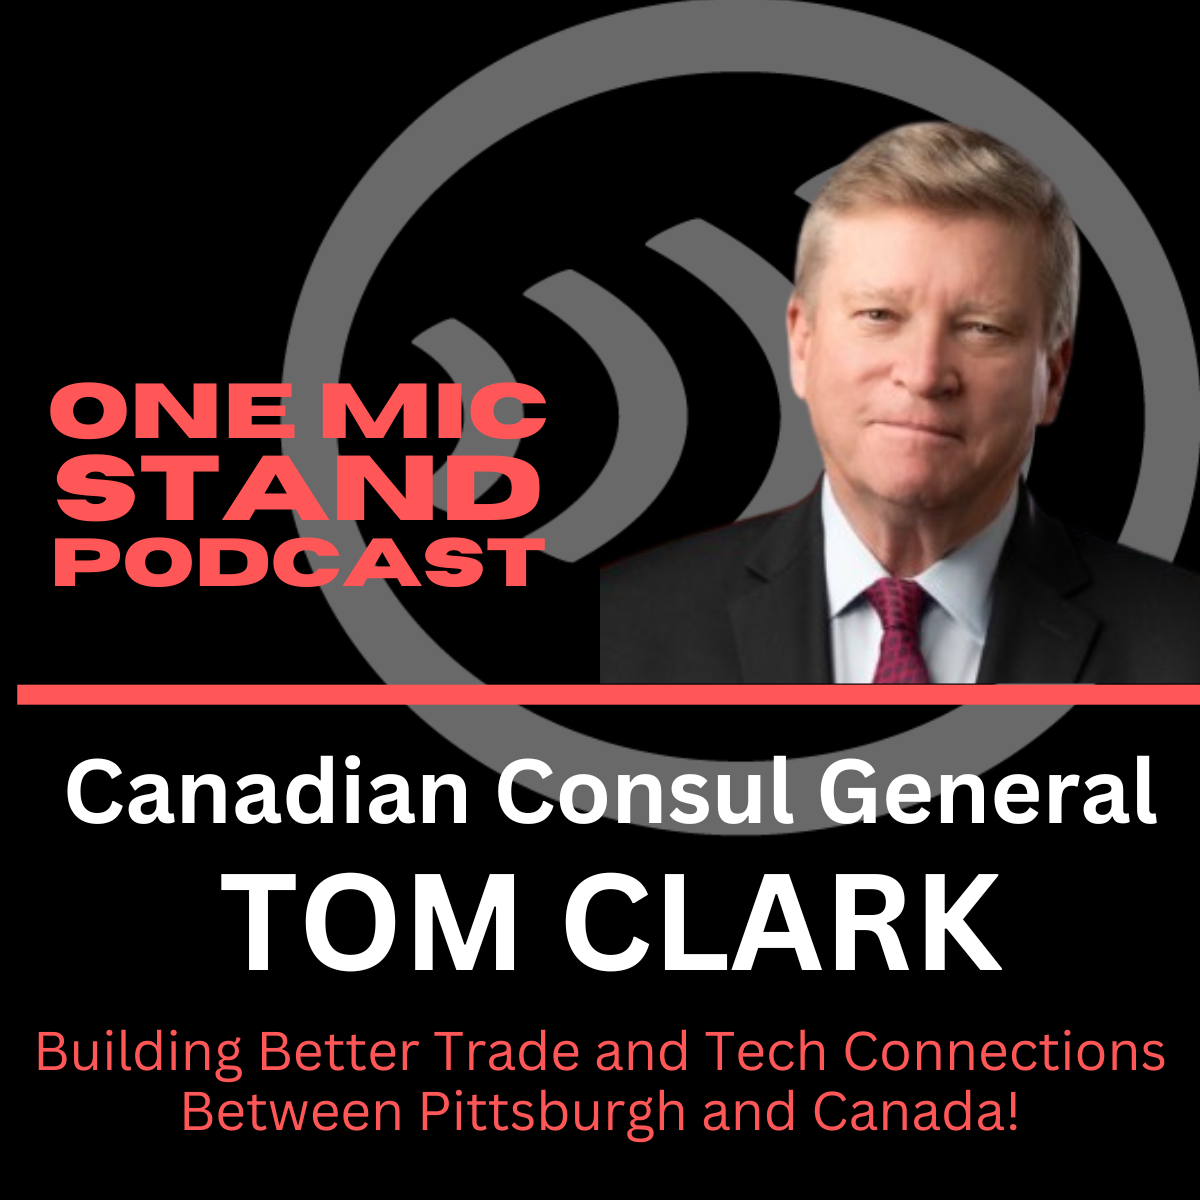 Canadian Consul General Tom Clark